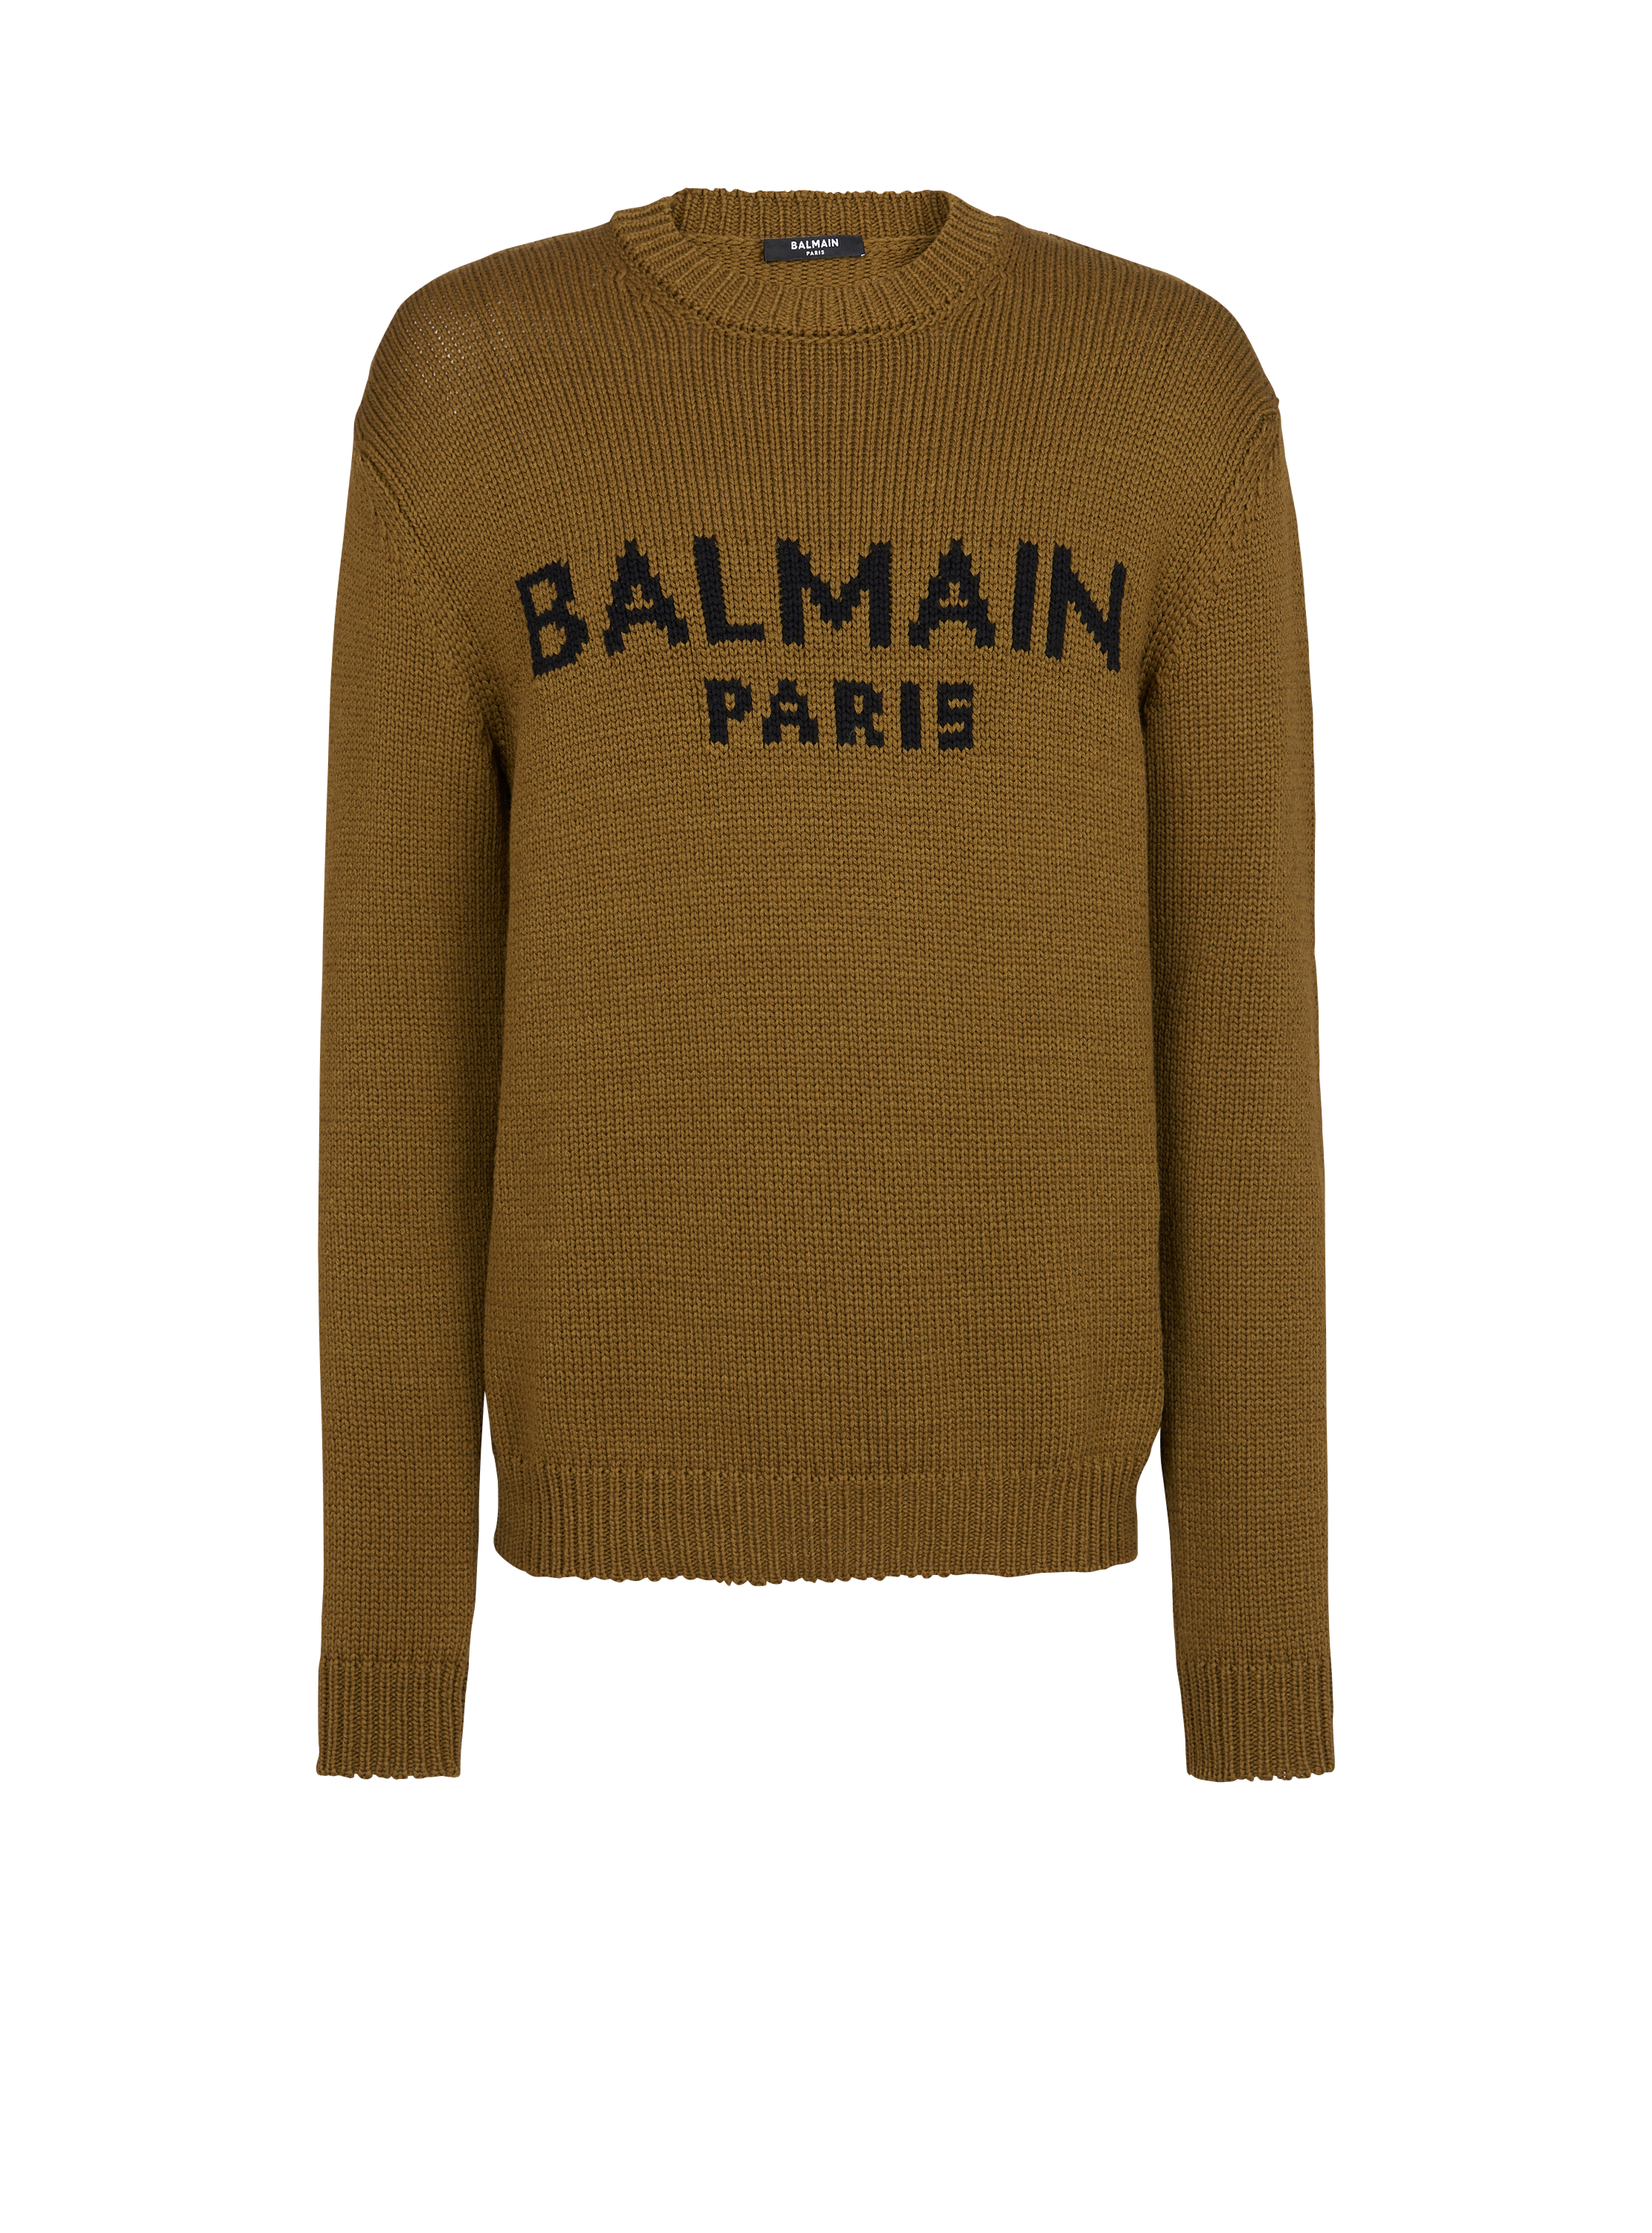 Pullover in lana con logo Balmain, kaki, hi-res